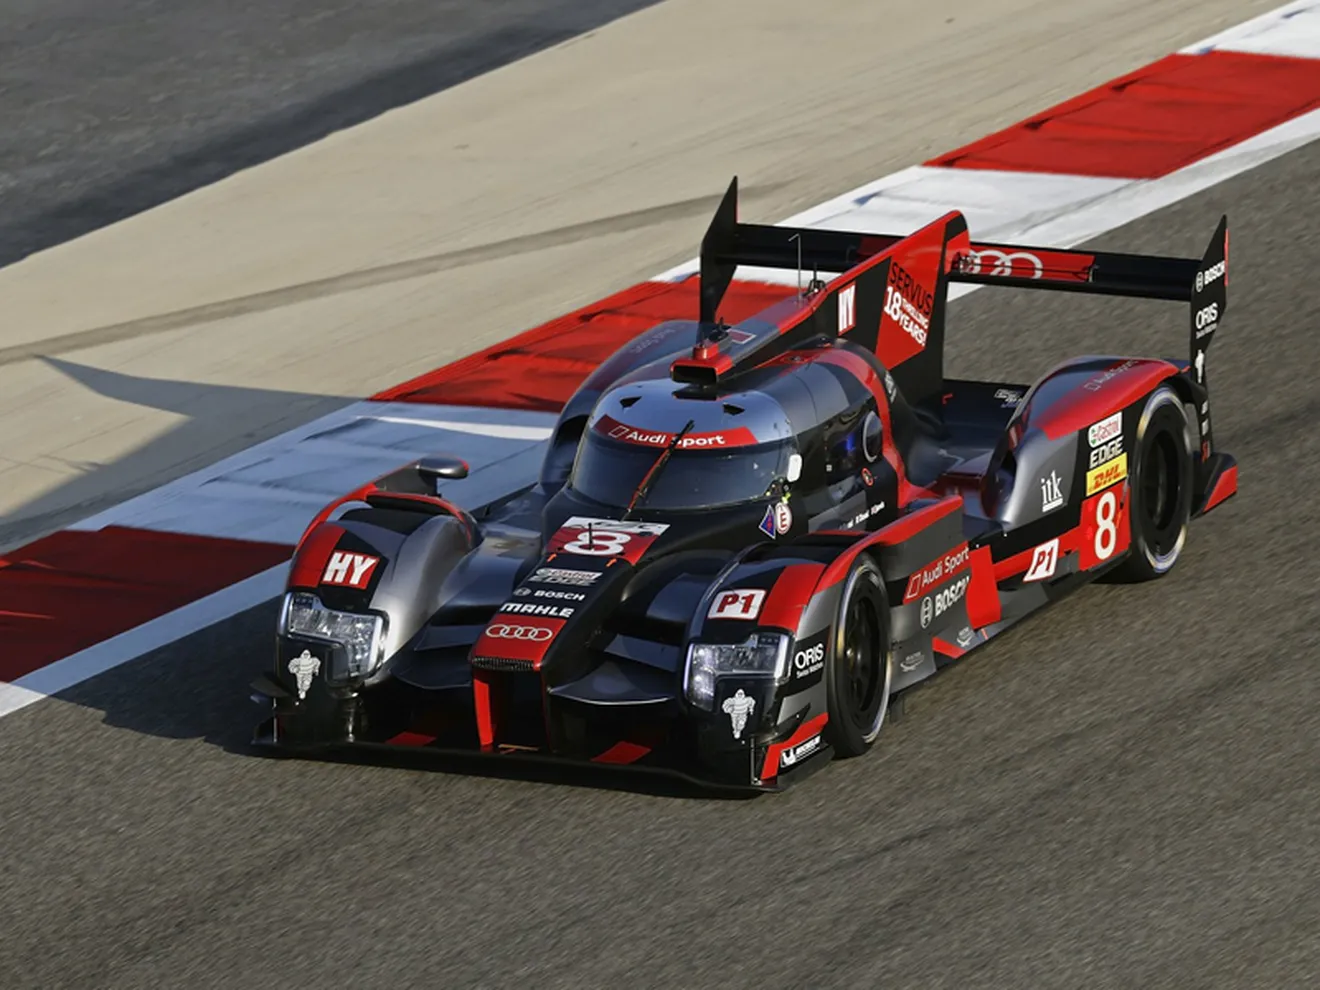 La pole del Audi #8 en Bahrein altera la lucha por el título